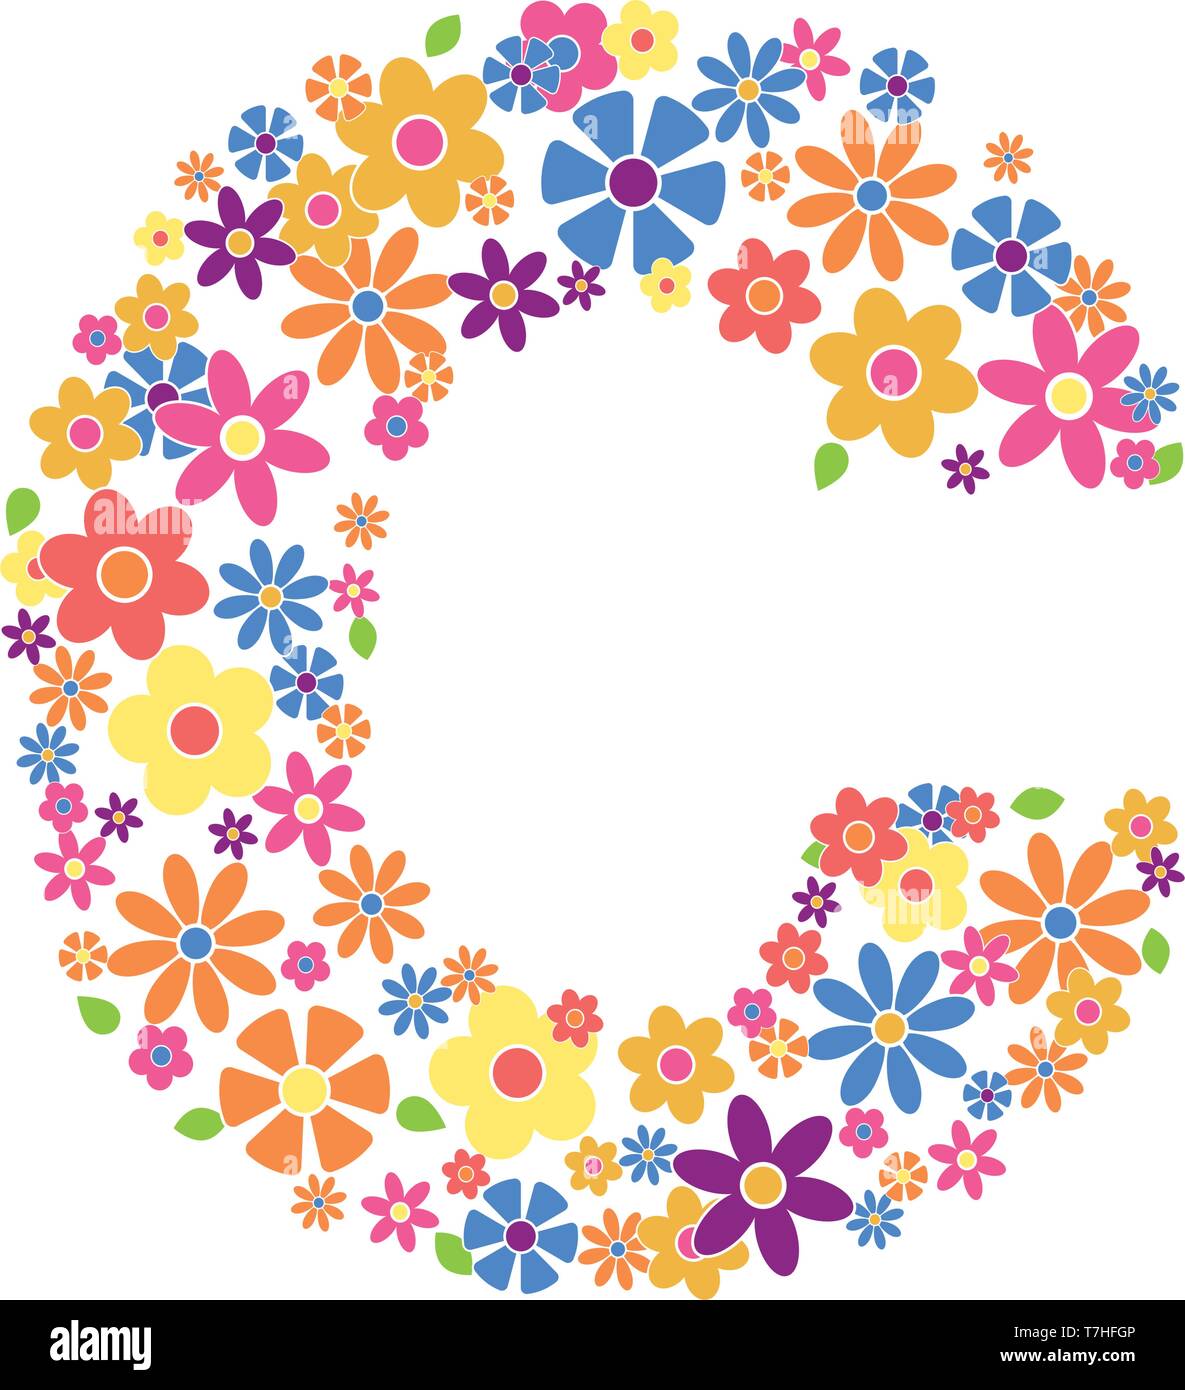 Buchstaben C mit einer Vielzahl von bunten Blumen auf weißem Hintergrund Vektor-illustration isoliert gefüllt Stock Vektor